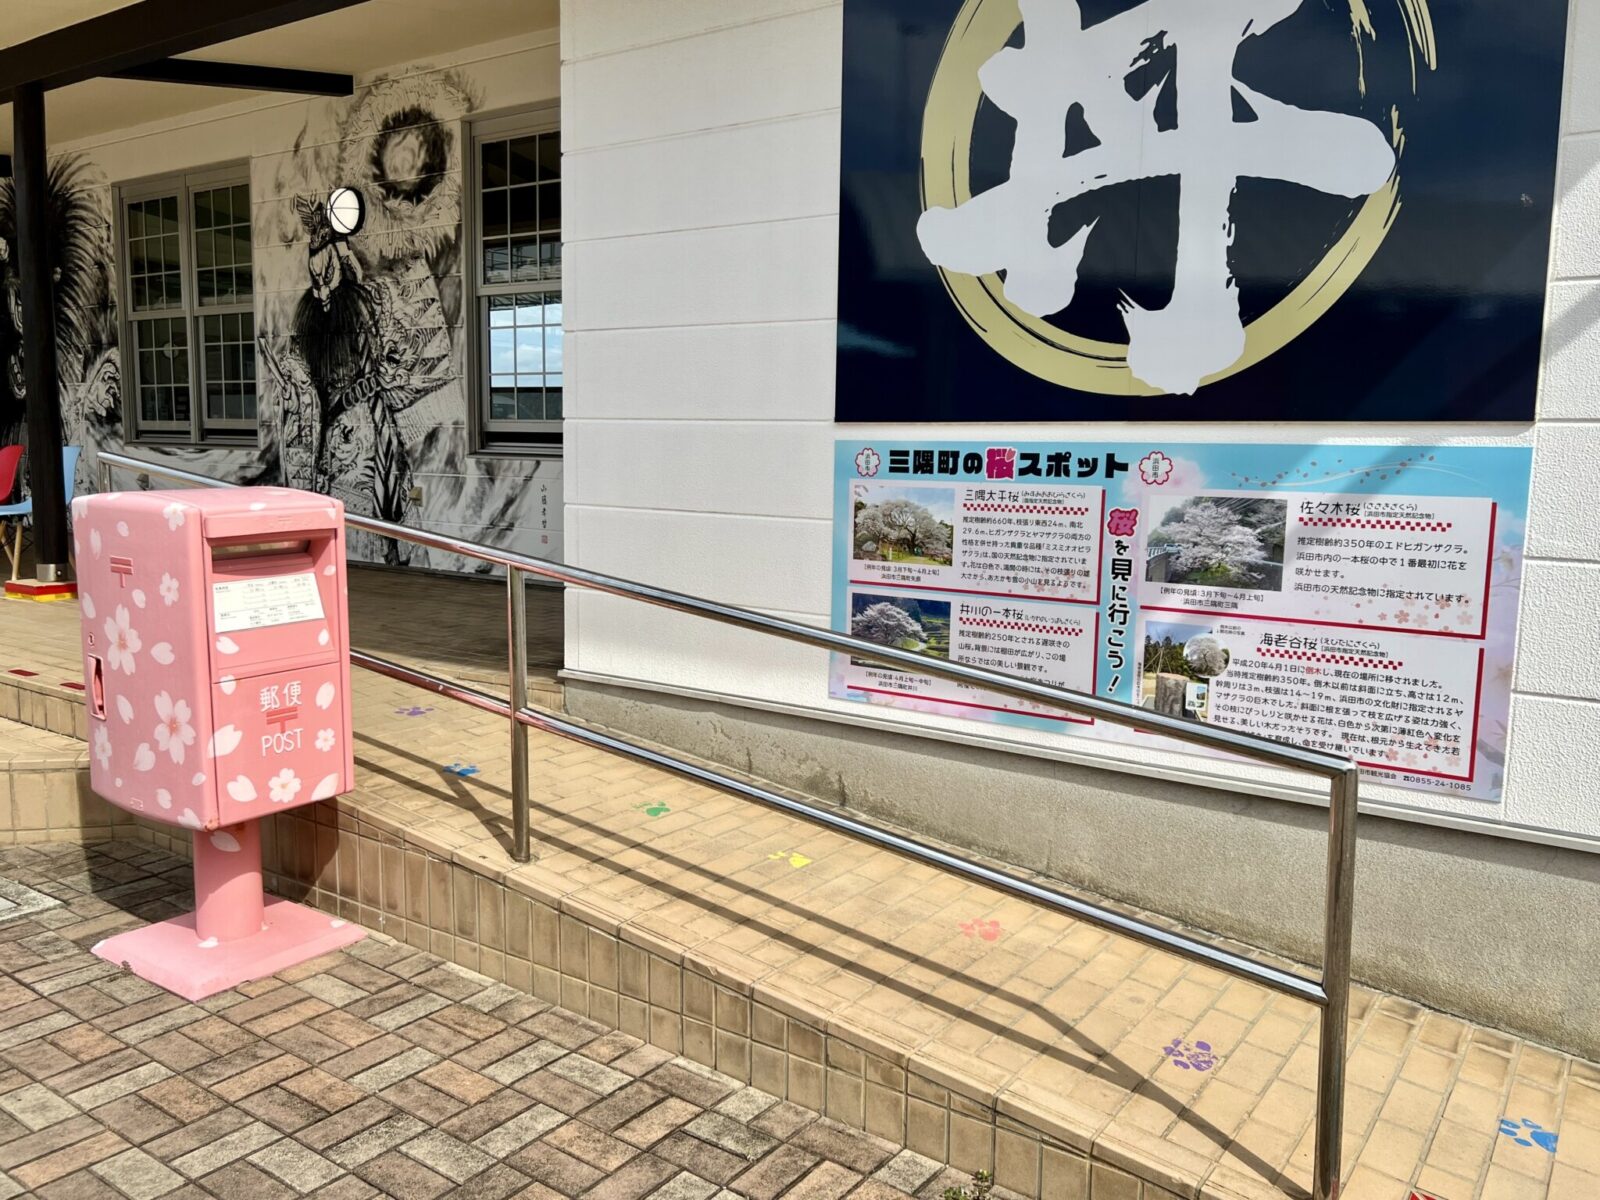 「ゆうひパーク三隅」桜ポストと桜の景勝地の紹介